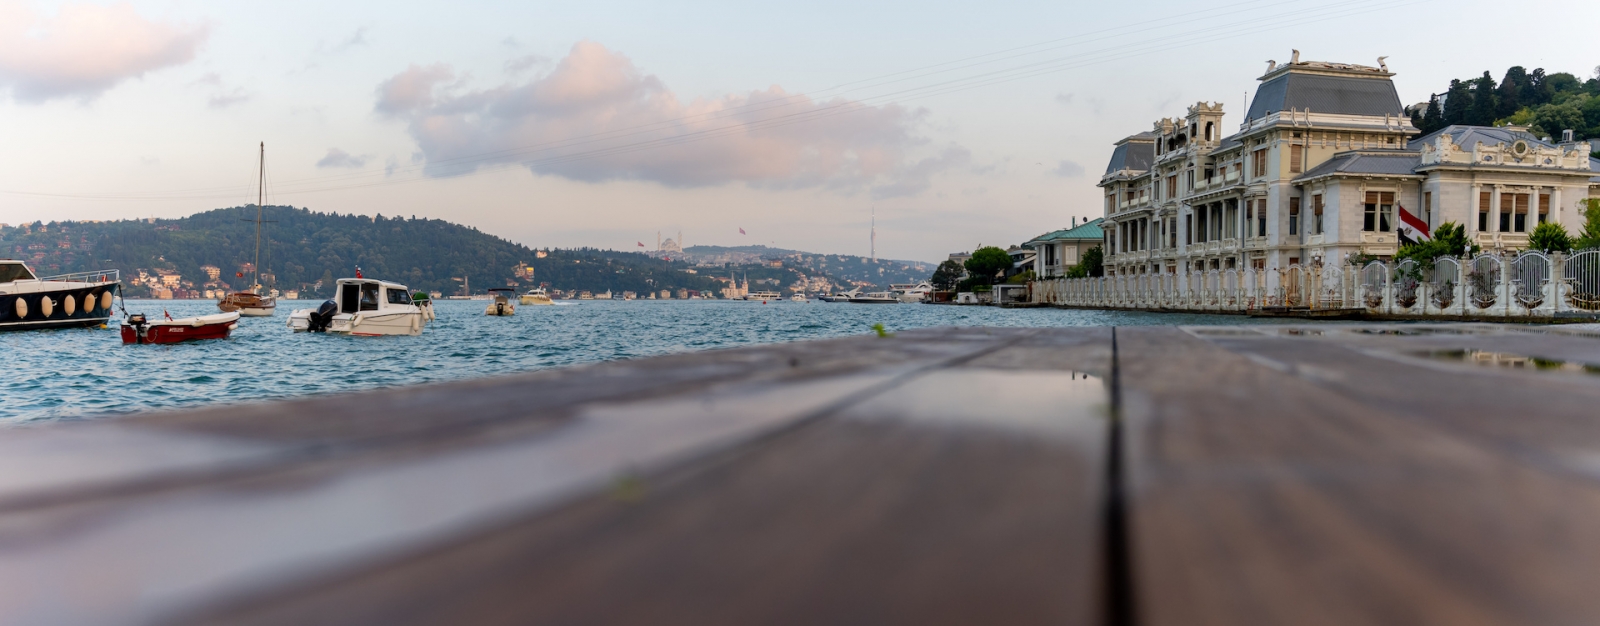 Vista del Bósforo, barcos, banco del patio y mansiones históricas desde la playa.  Playa Bebek.  Besiktas Estambul Turquía